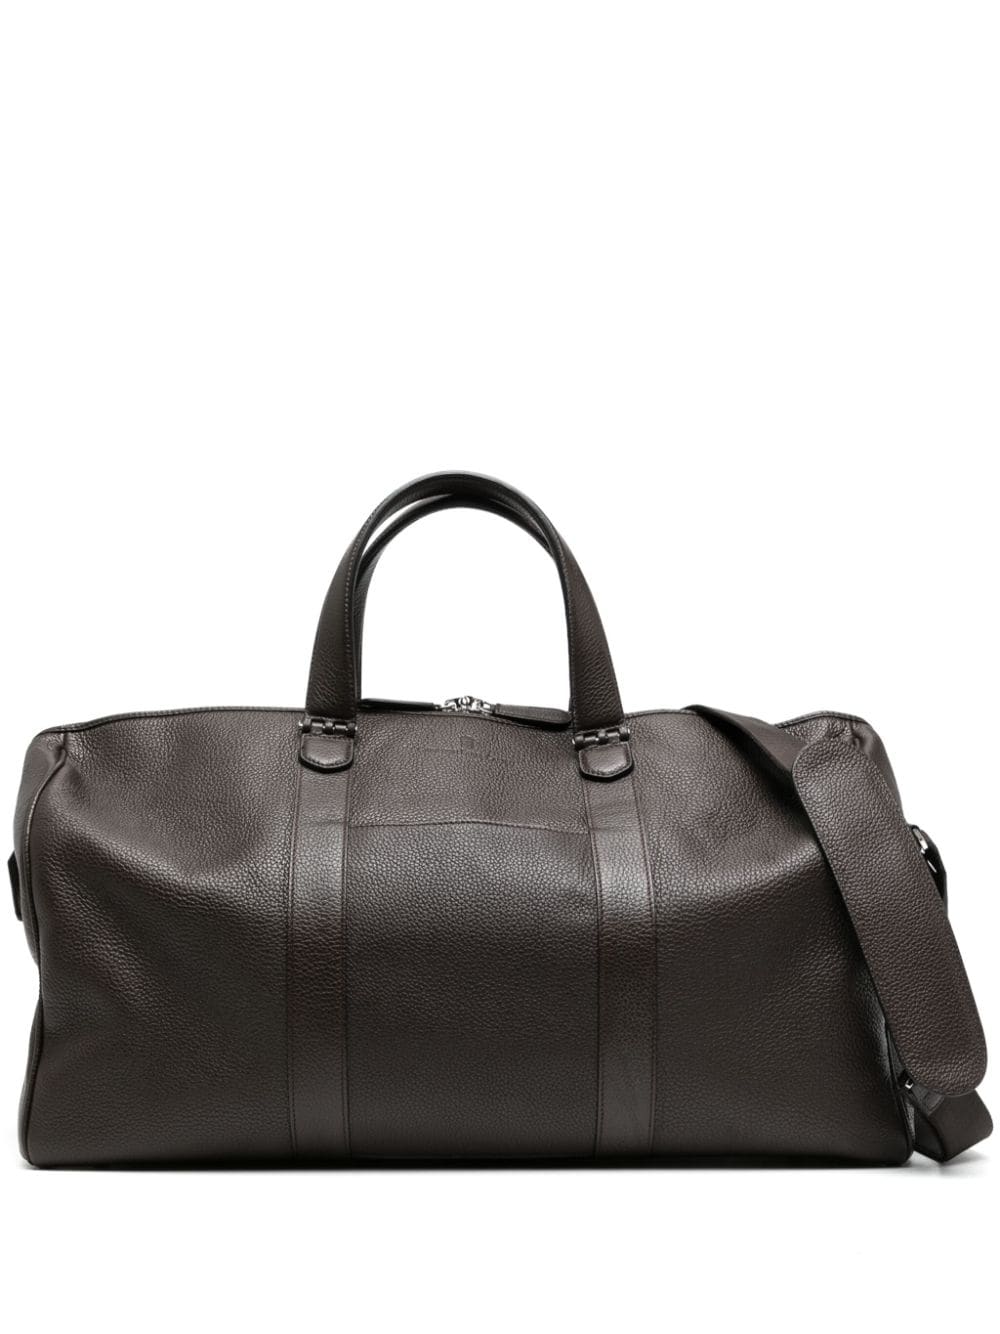 Graf von Faber-Castell Weekender leather luggage bag - Brown von Graf von Faber-Castell